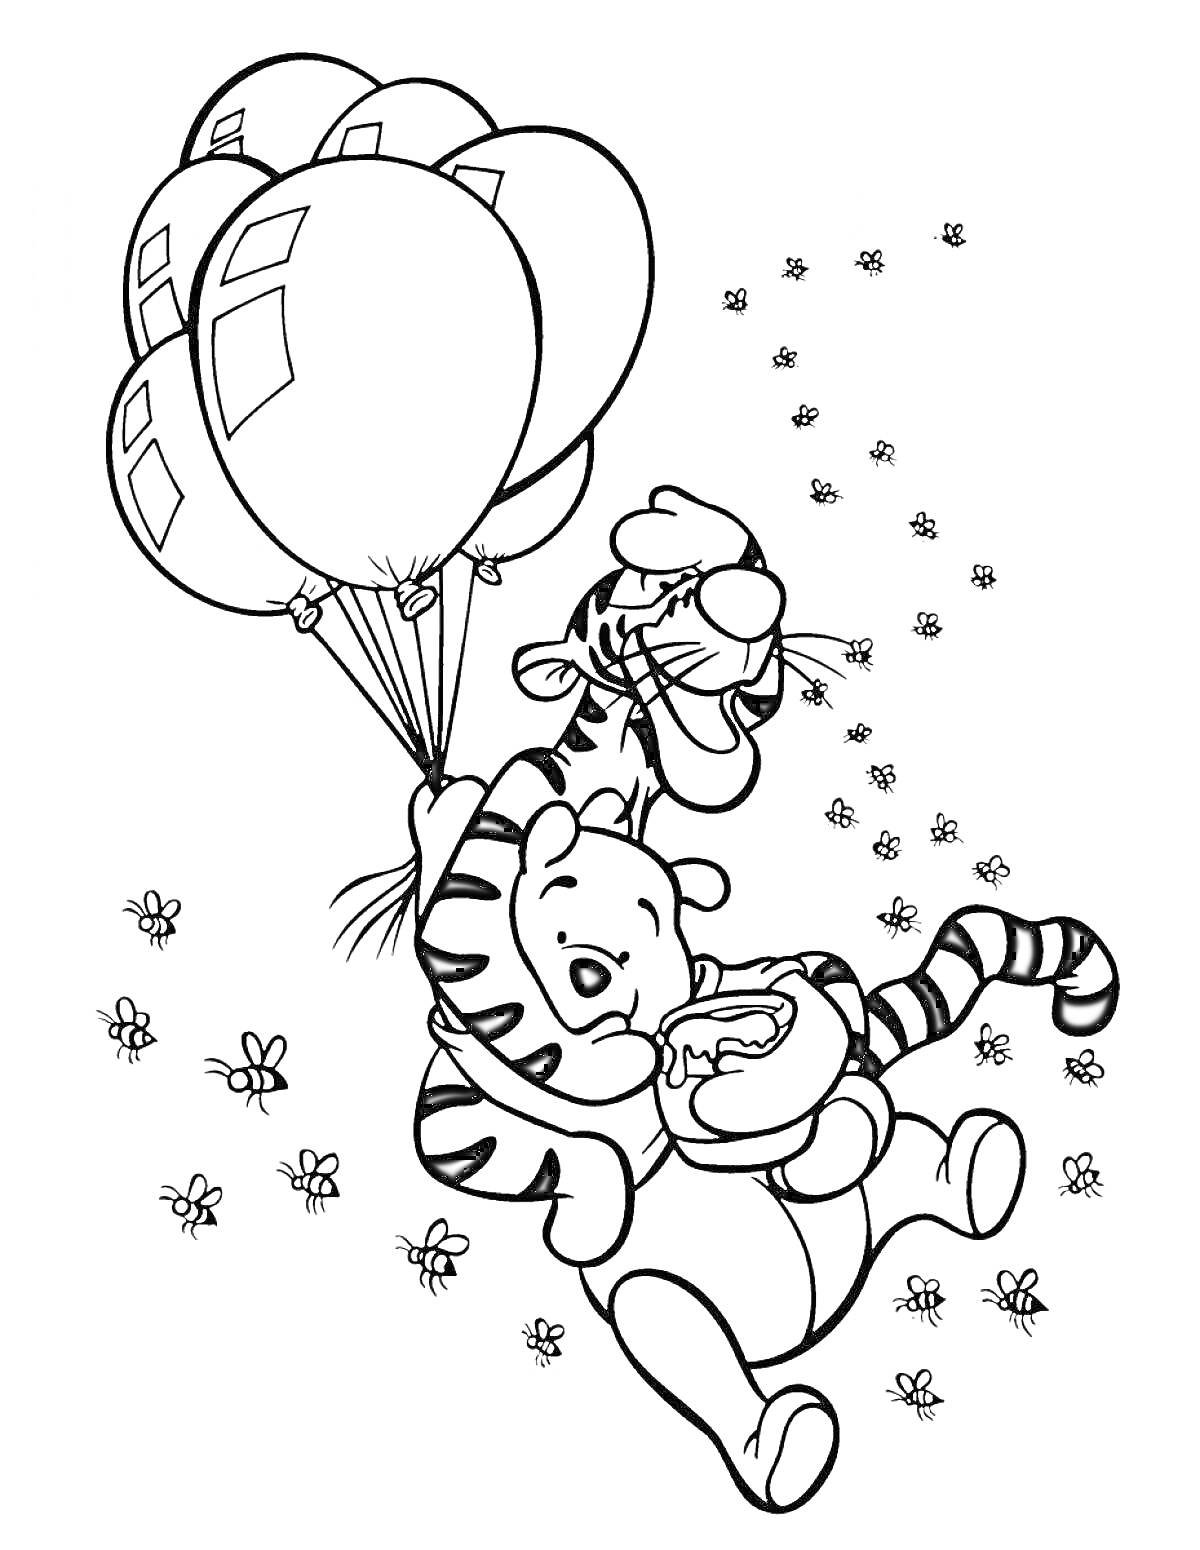 Раскраска Тигр и медвежонок с воздушными шариками, цветы, летающие пчелы